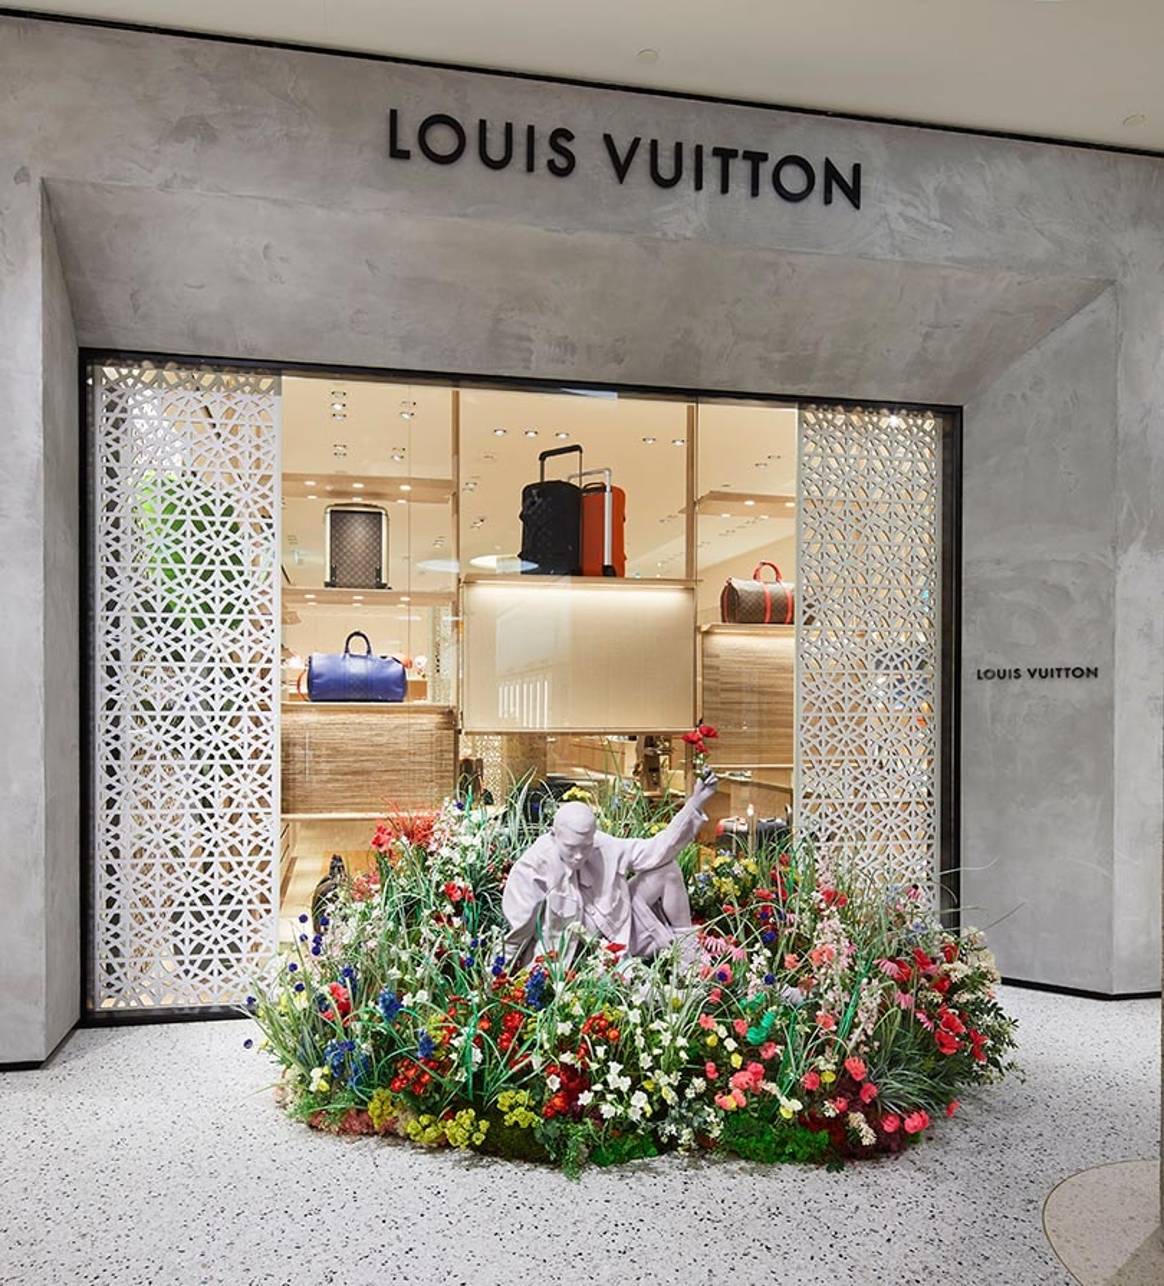 Binnenkijken bij de nieuwe Louis Vuitton boetiek in Rotterdamse Bijenkorf